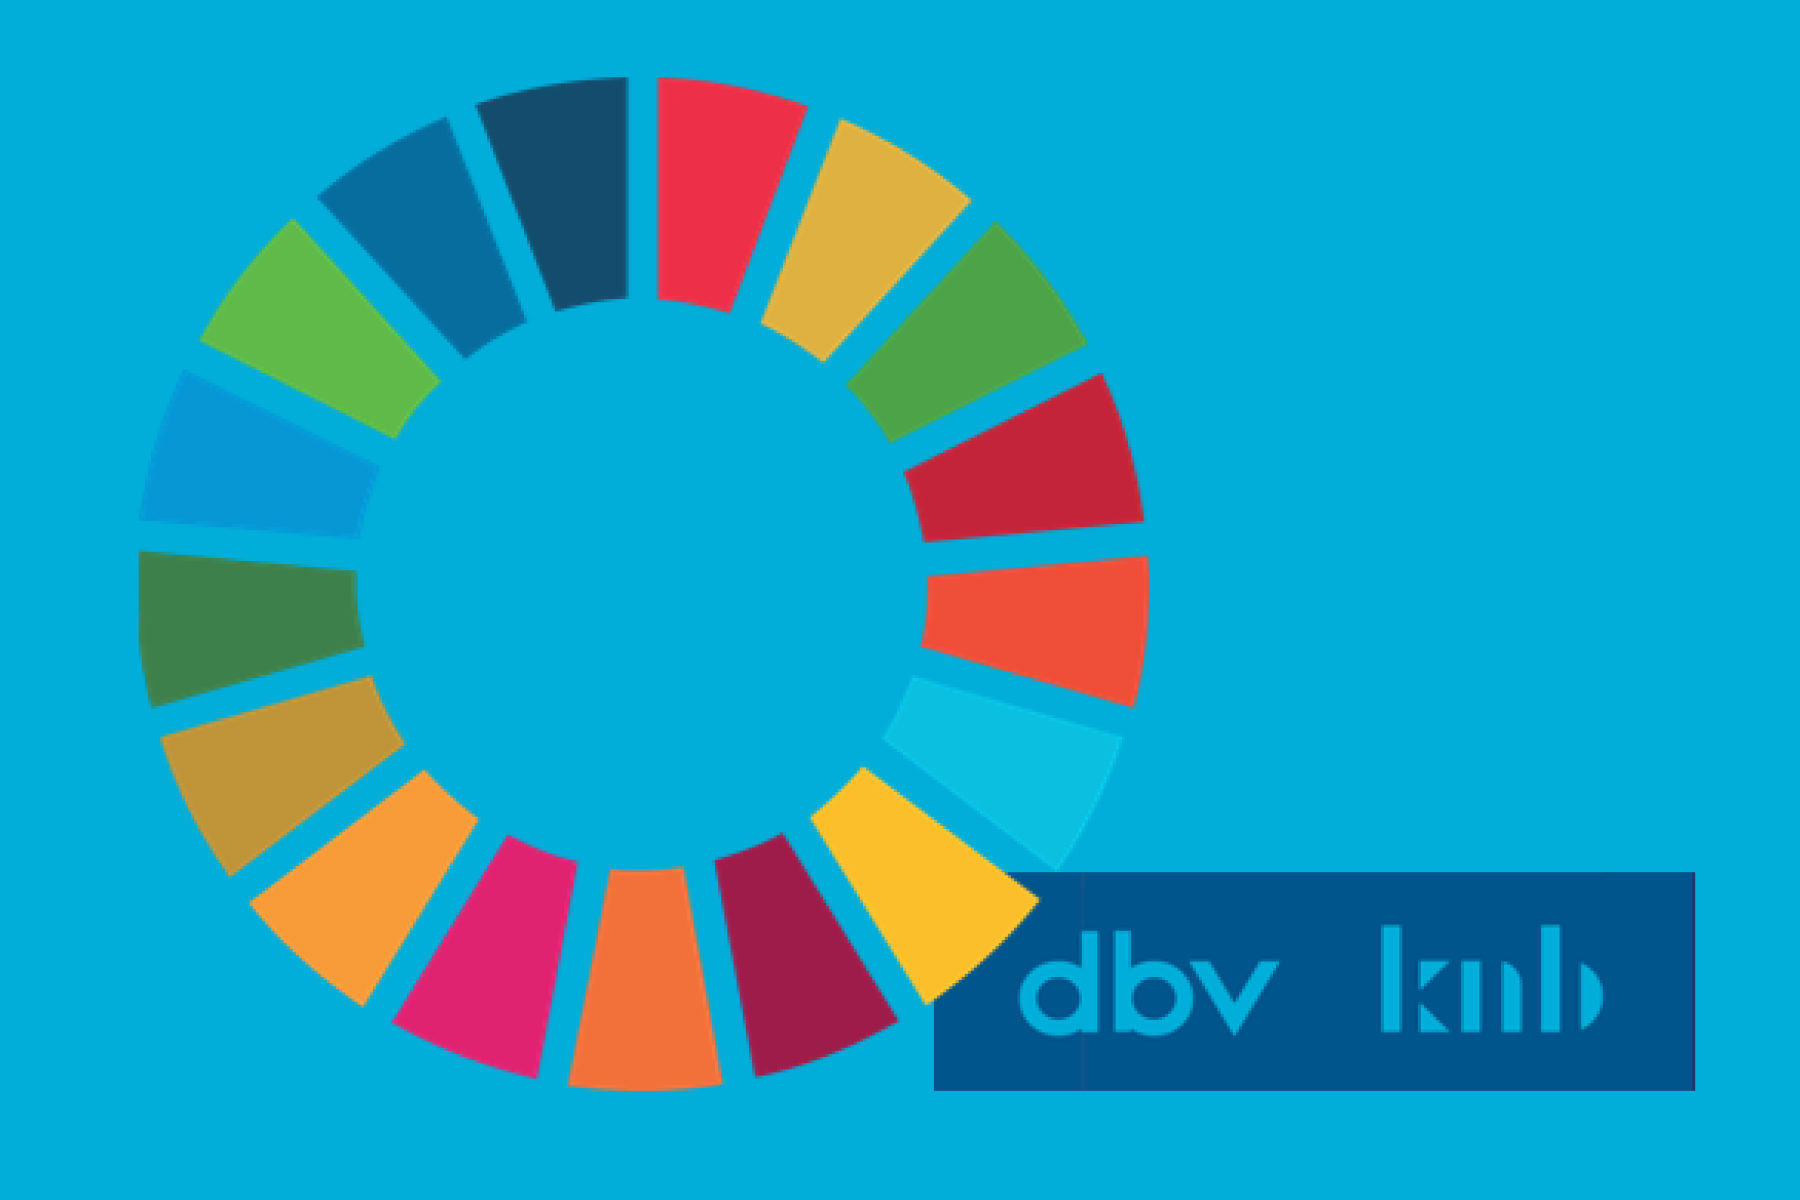 SDG-Rad mit dbv- und knb-Logo